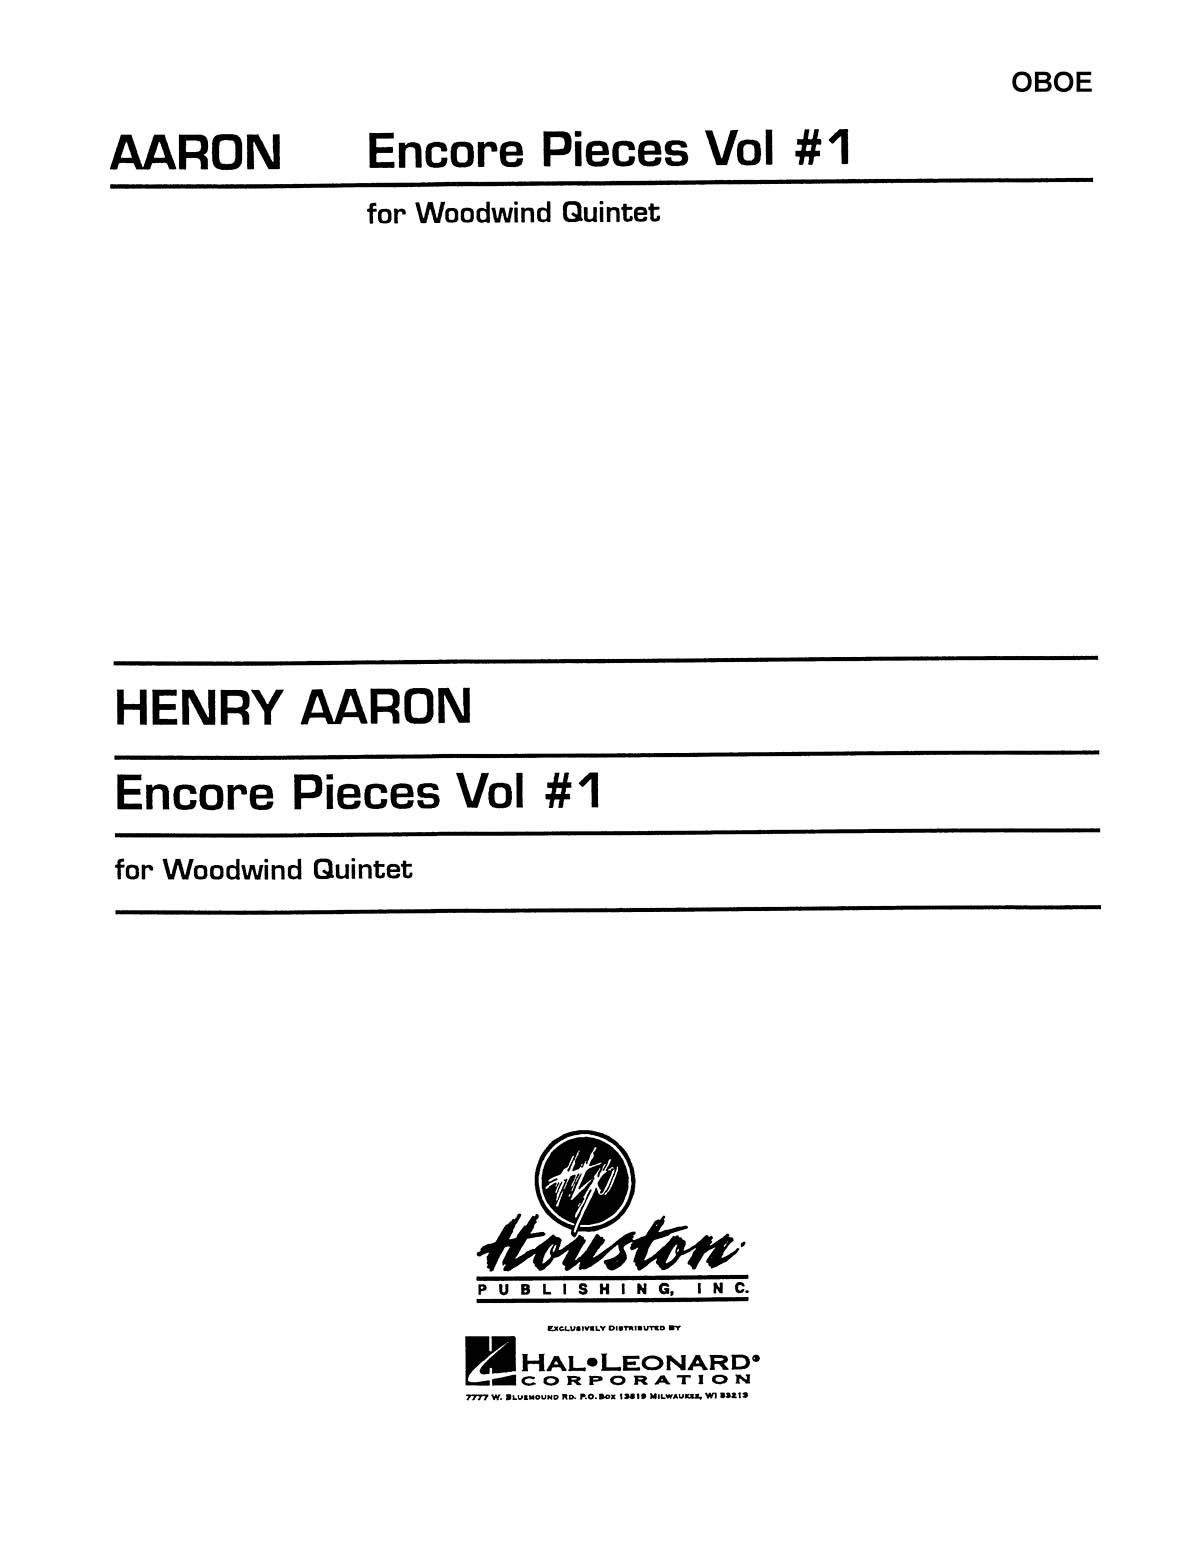 Encore Pieces for Woodwind Quintet  Vol. 1 - Oboe: Woodwind Ensemble: Part